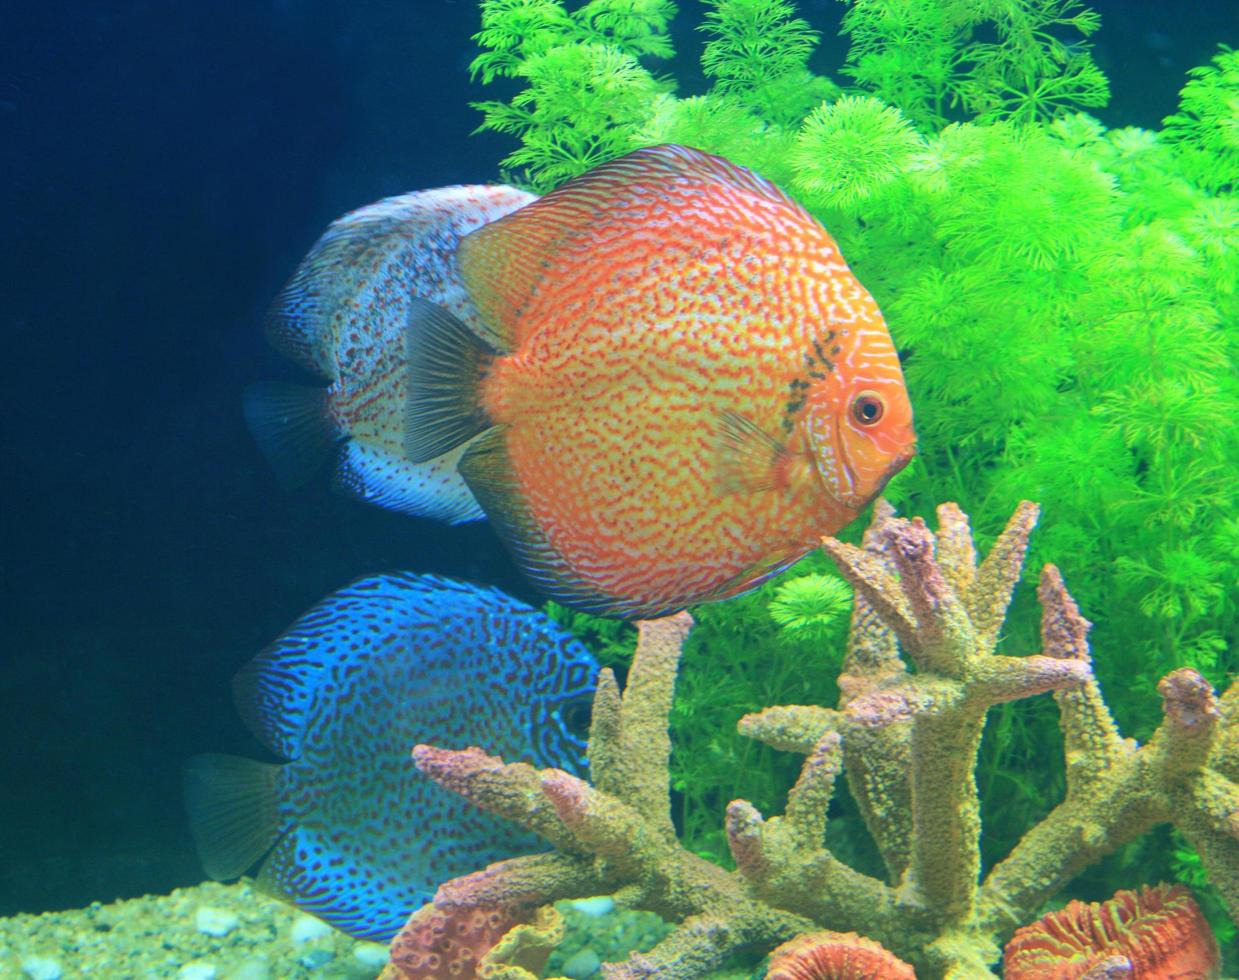 poisson discus dans un aquarium photo